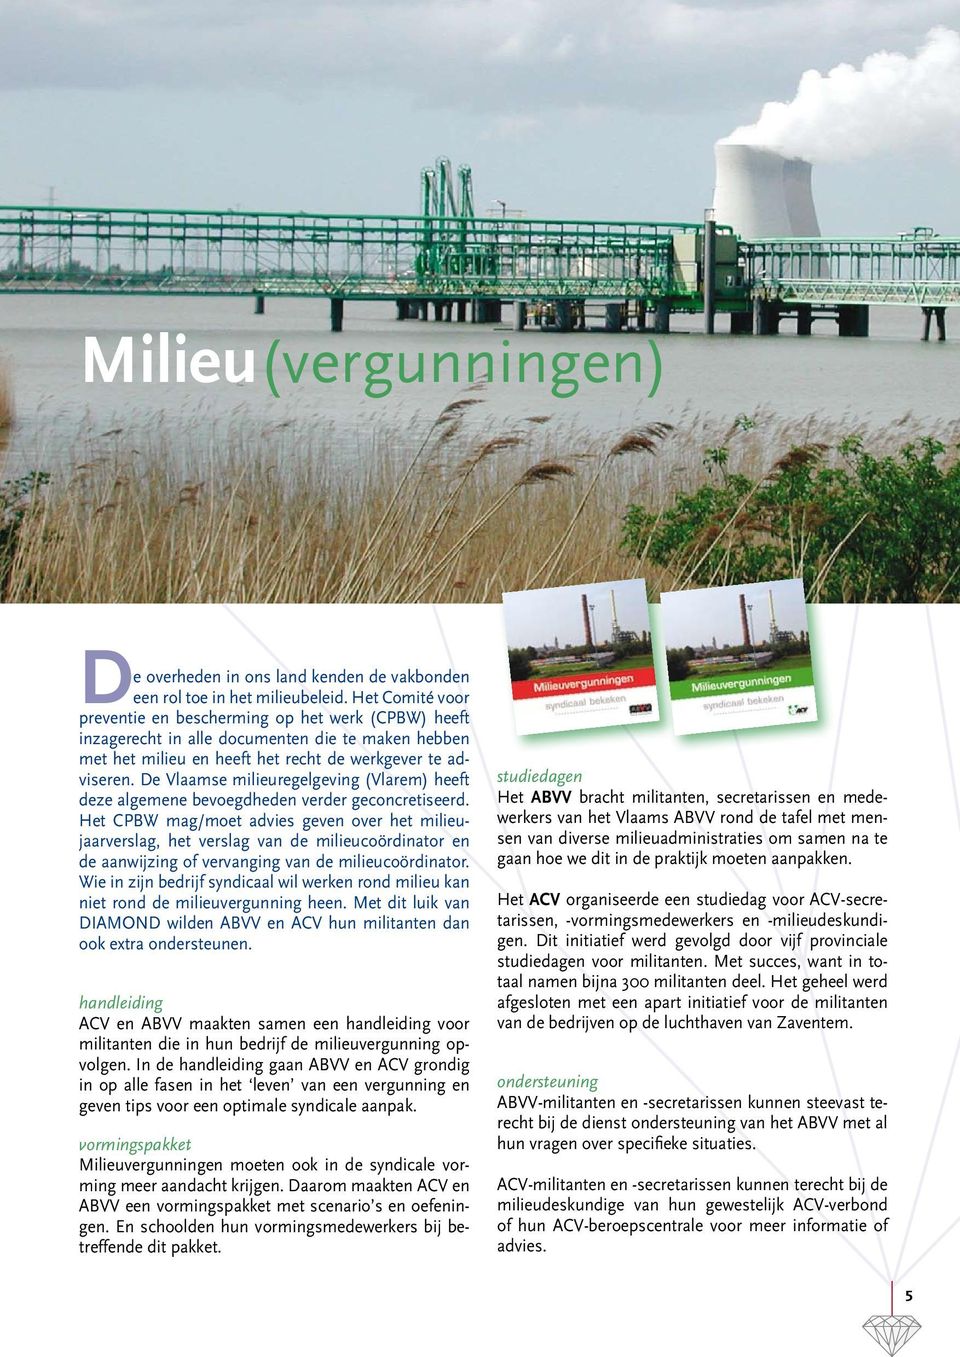 De Vlaamse milieuregelgeving (Vlarem) heeft deze algemene bevoegdheden verder geconcretiseerd.